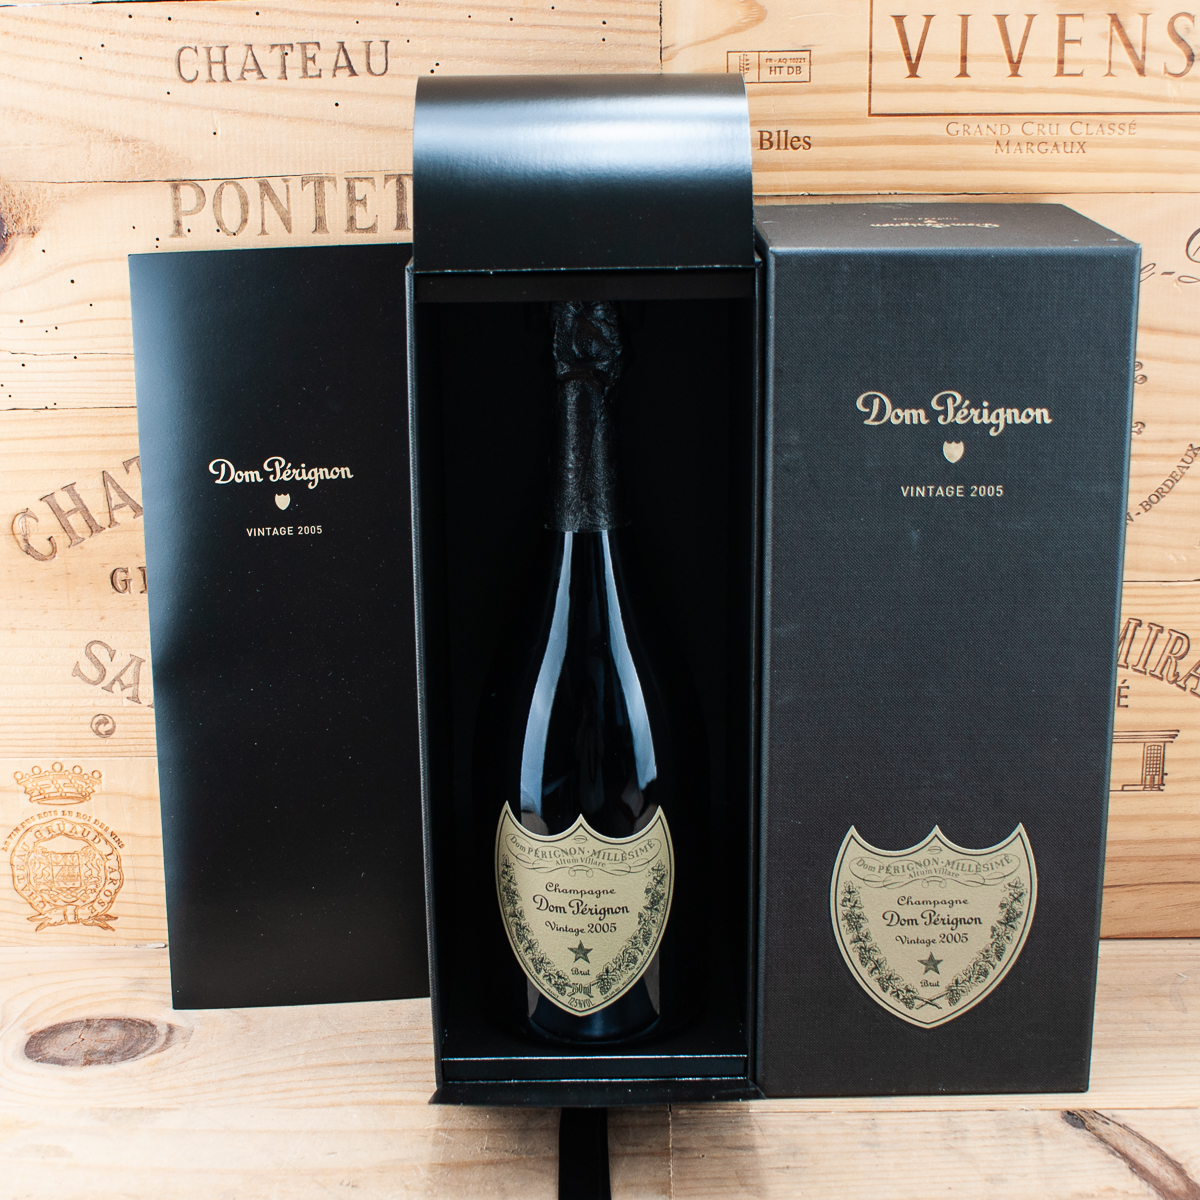 2005 Champagne Dom Perignon Vintage